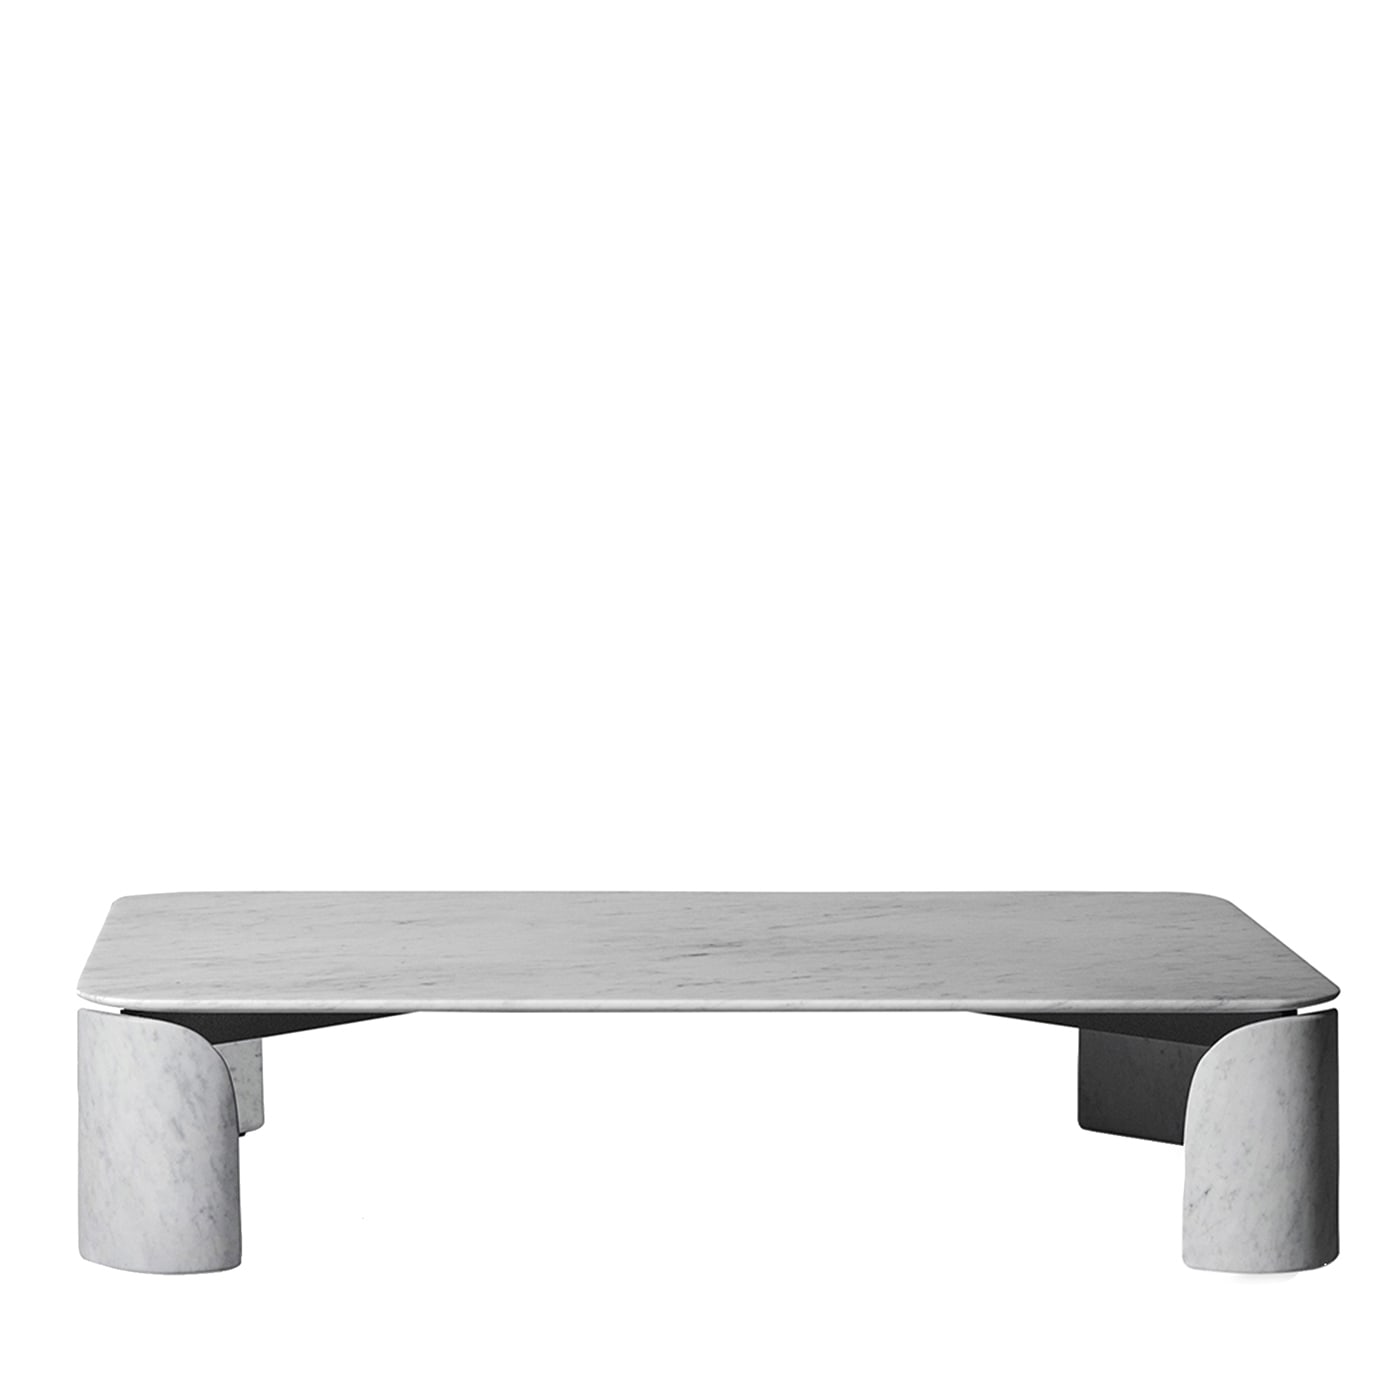 Taula White Carrara Rectangular Coffee Table - Salvatori